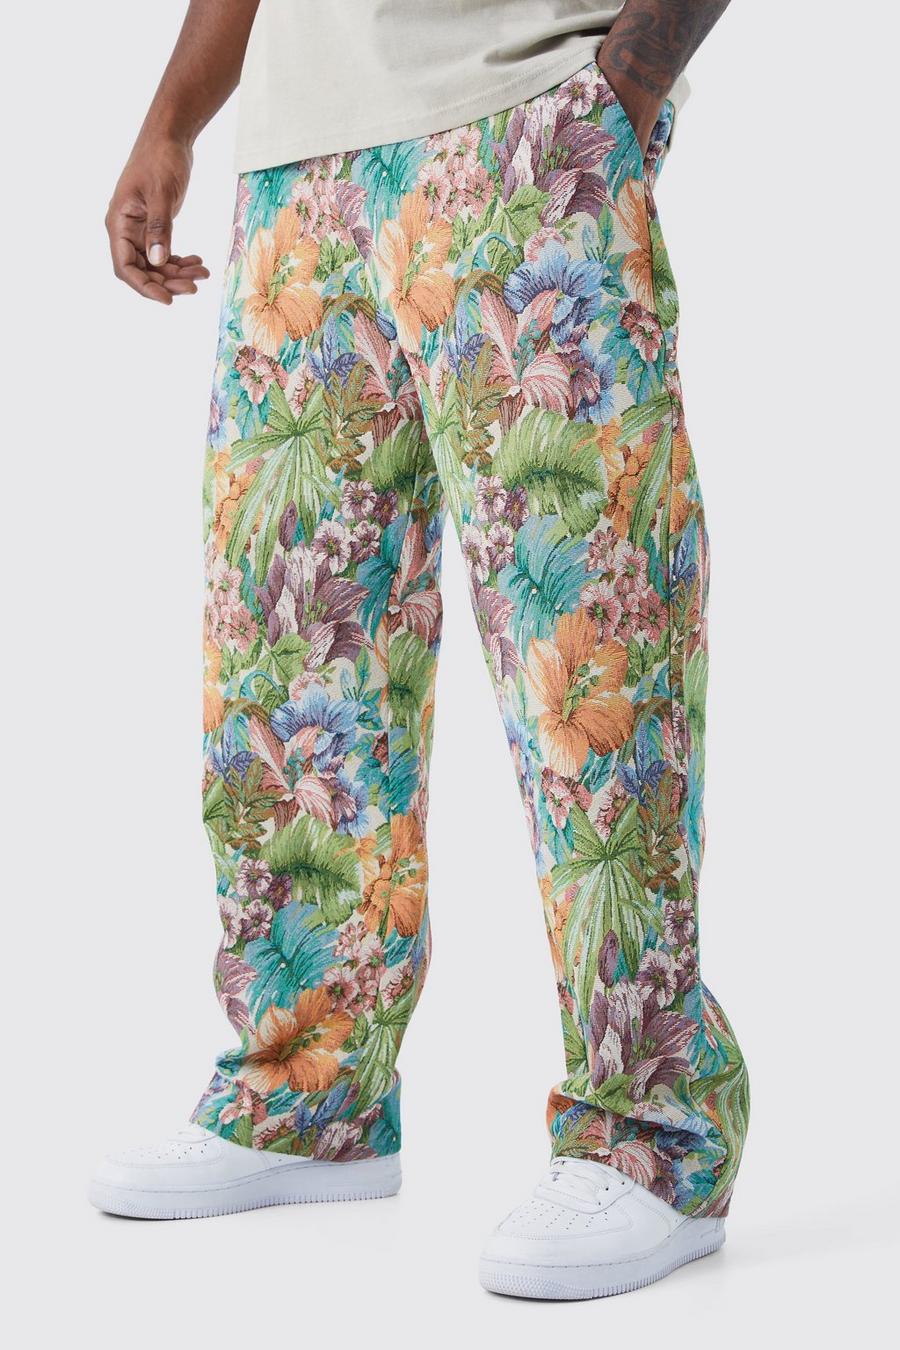 Pantaloni Plus Size stile arazzo a fiori con vita fissa, Stone beis